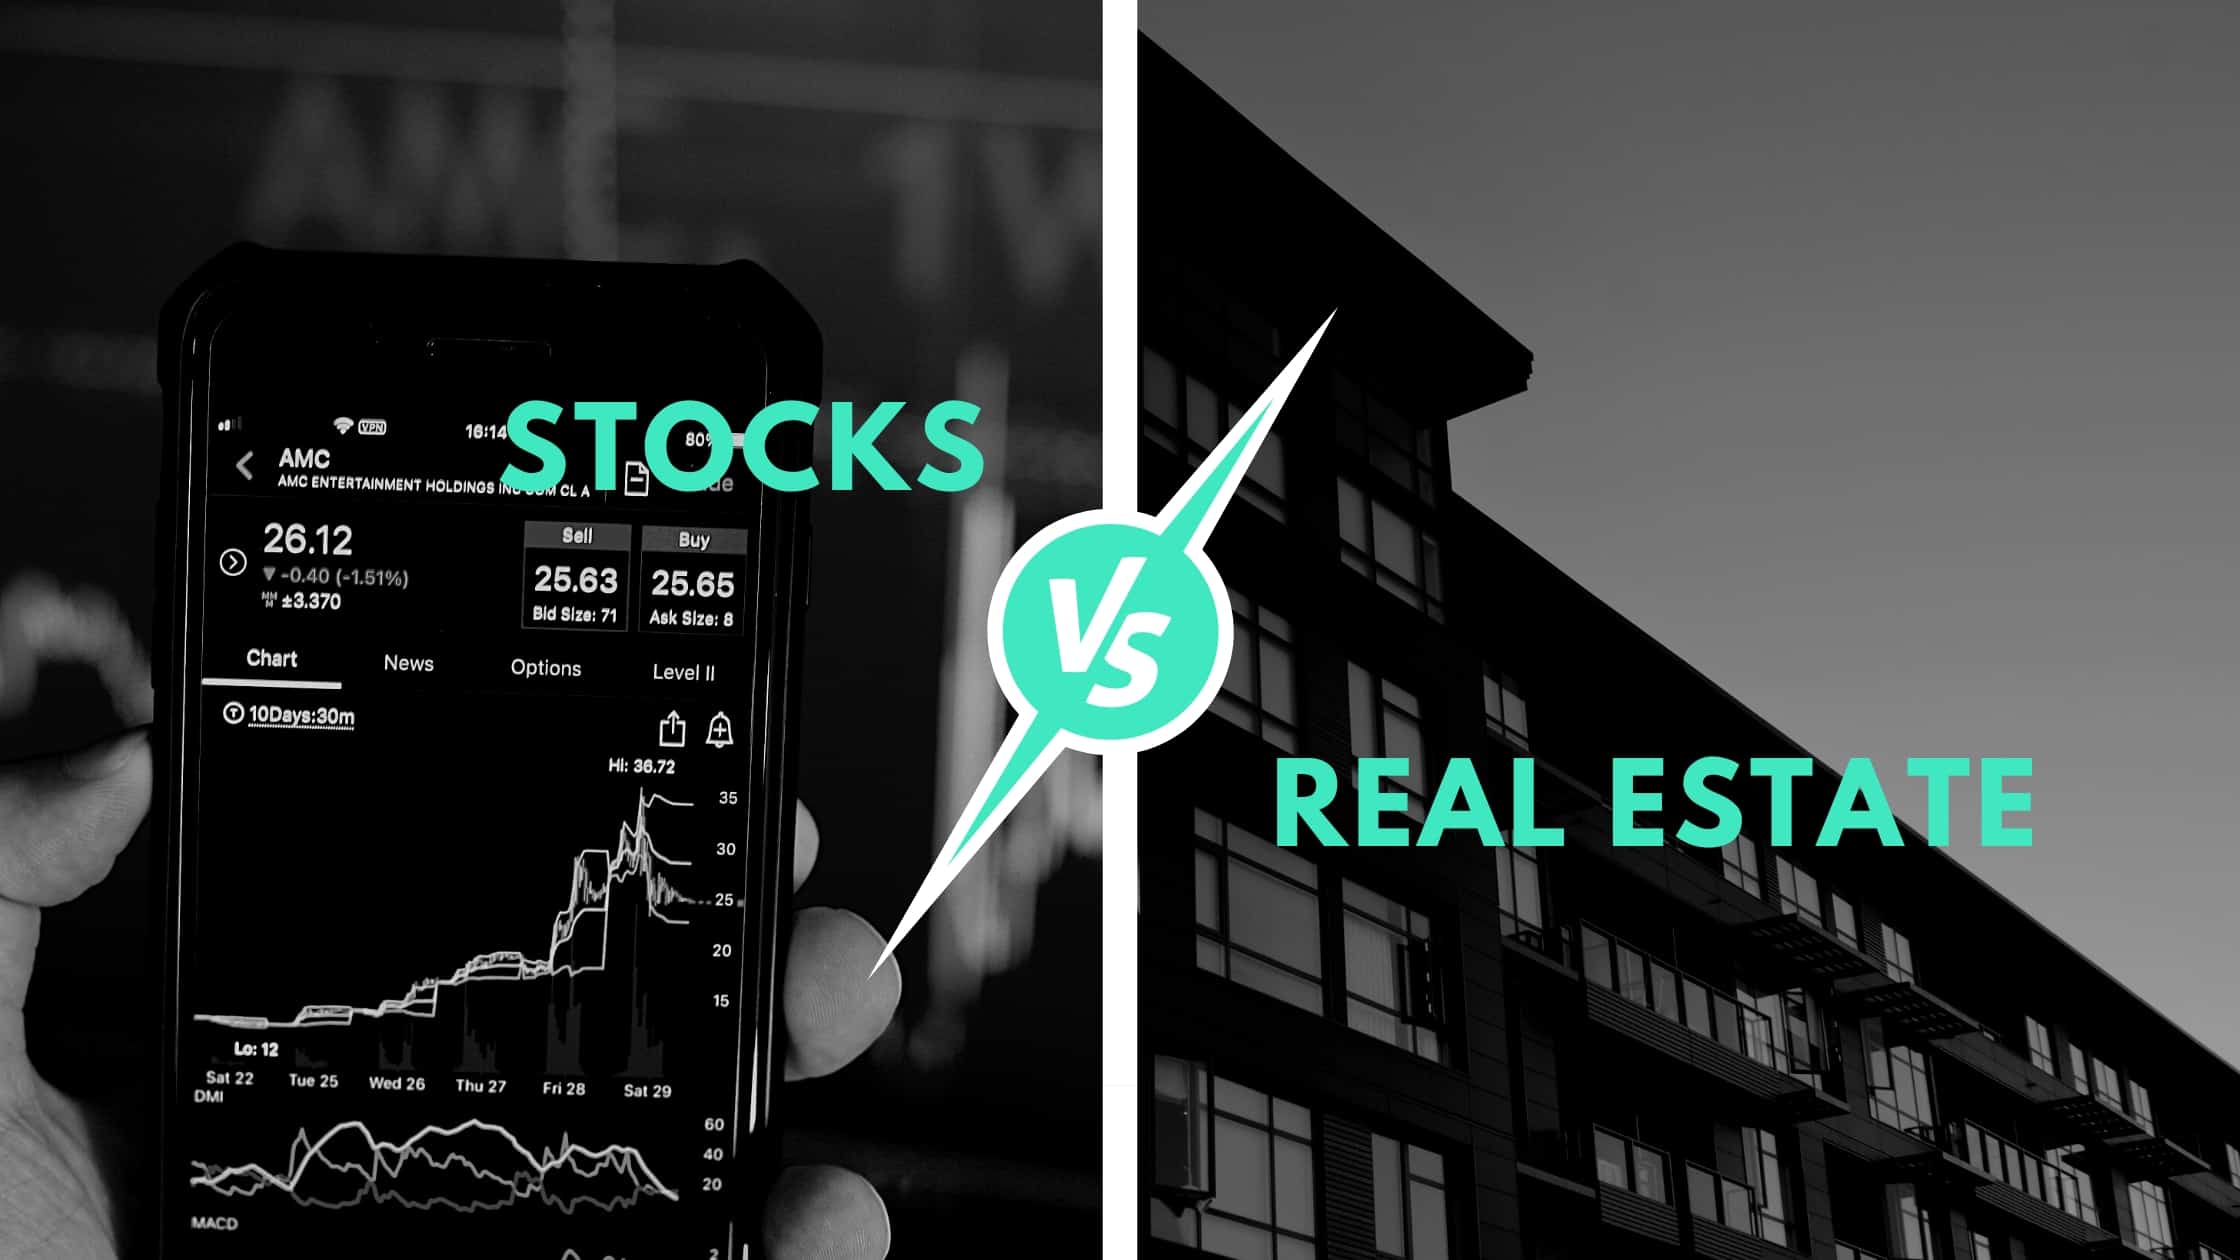 Real Estate vS. Stock Investing